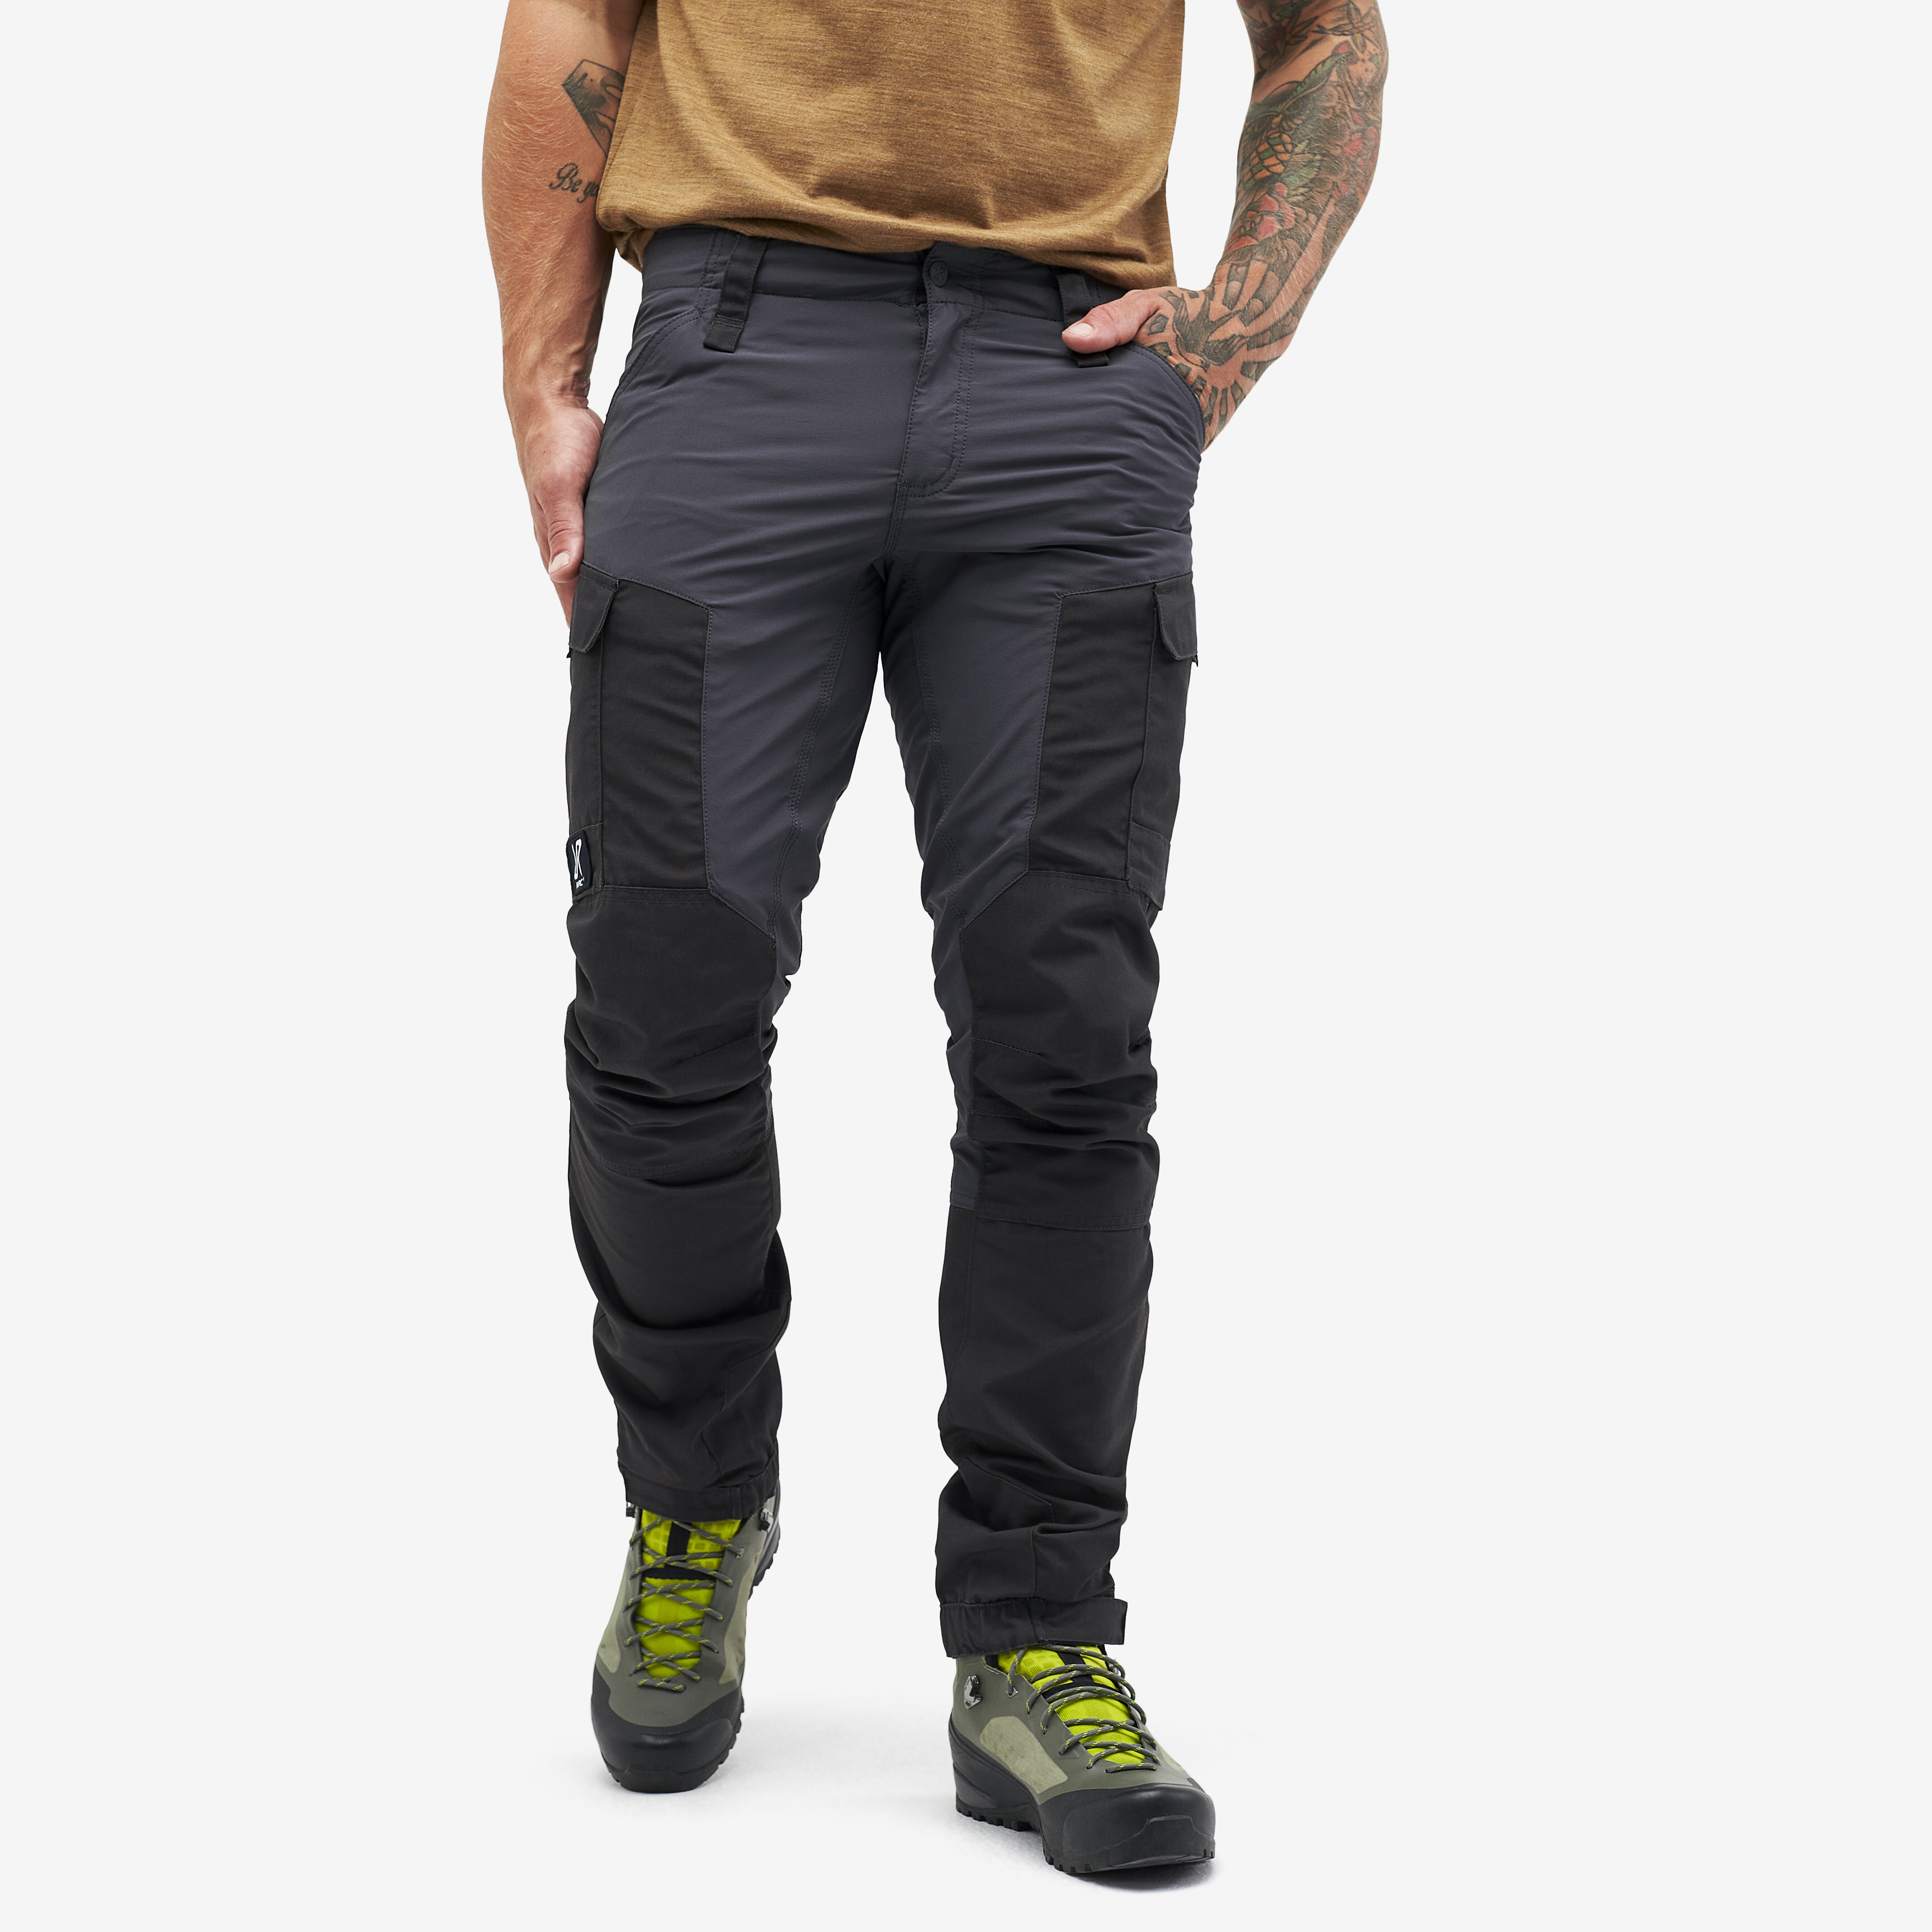 Pantaloni outdoor RVRC GP da uomo in grigio scuro